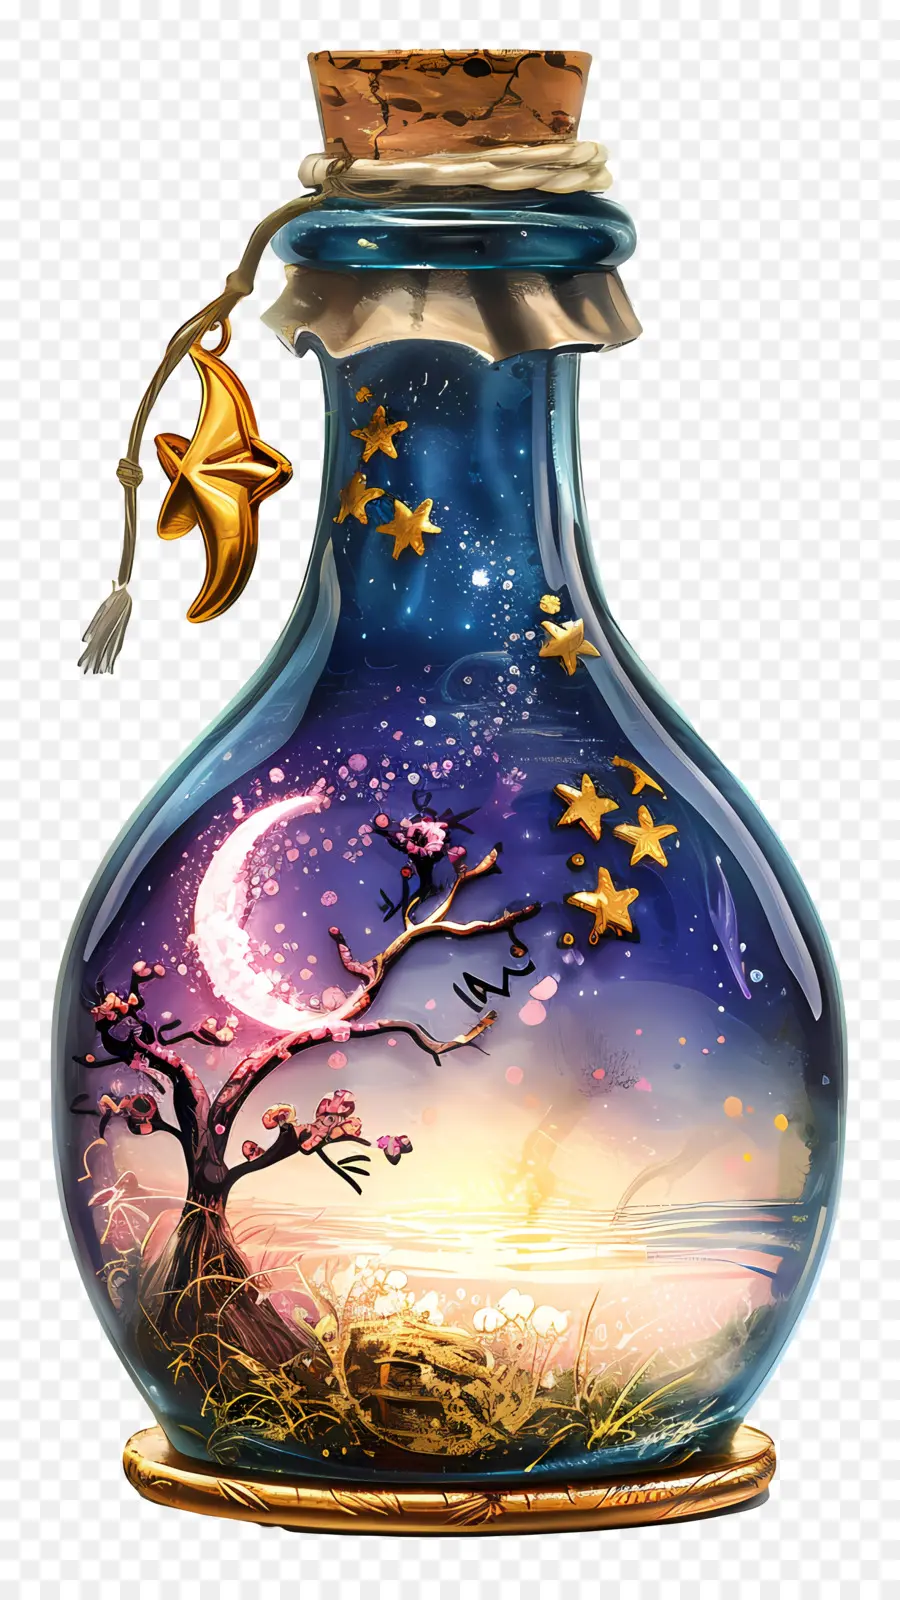 Halbmond - Glasflasche mit Sternen, Mond, Baum, Haus